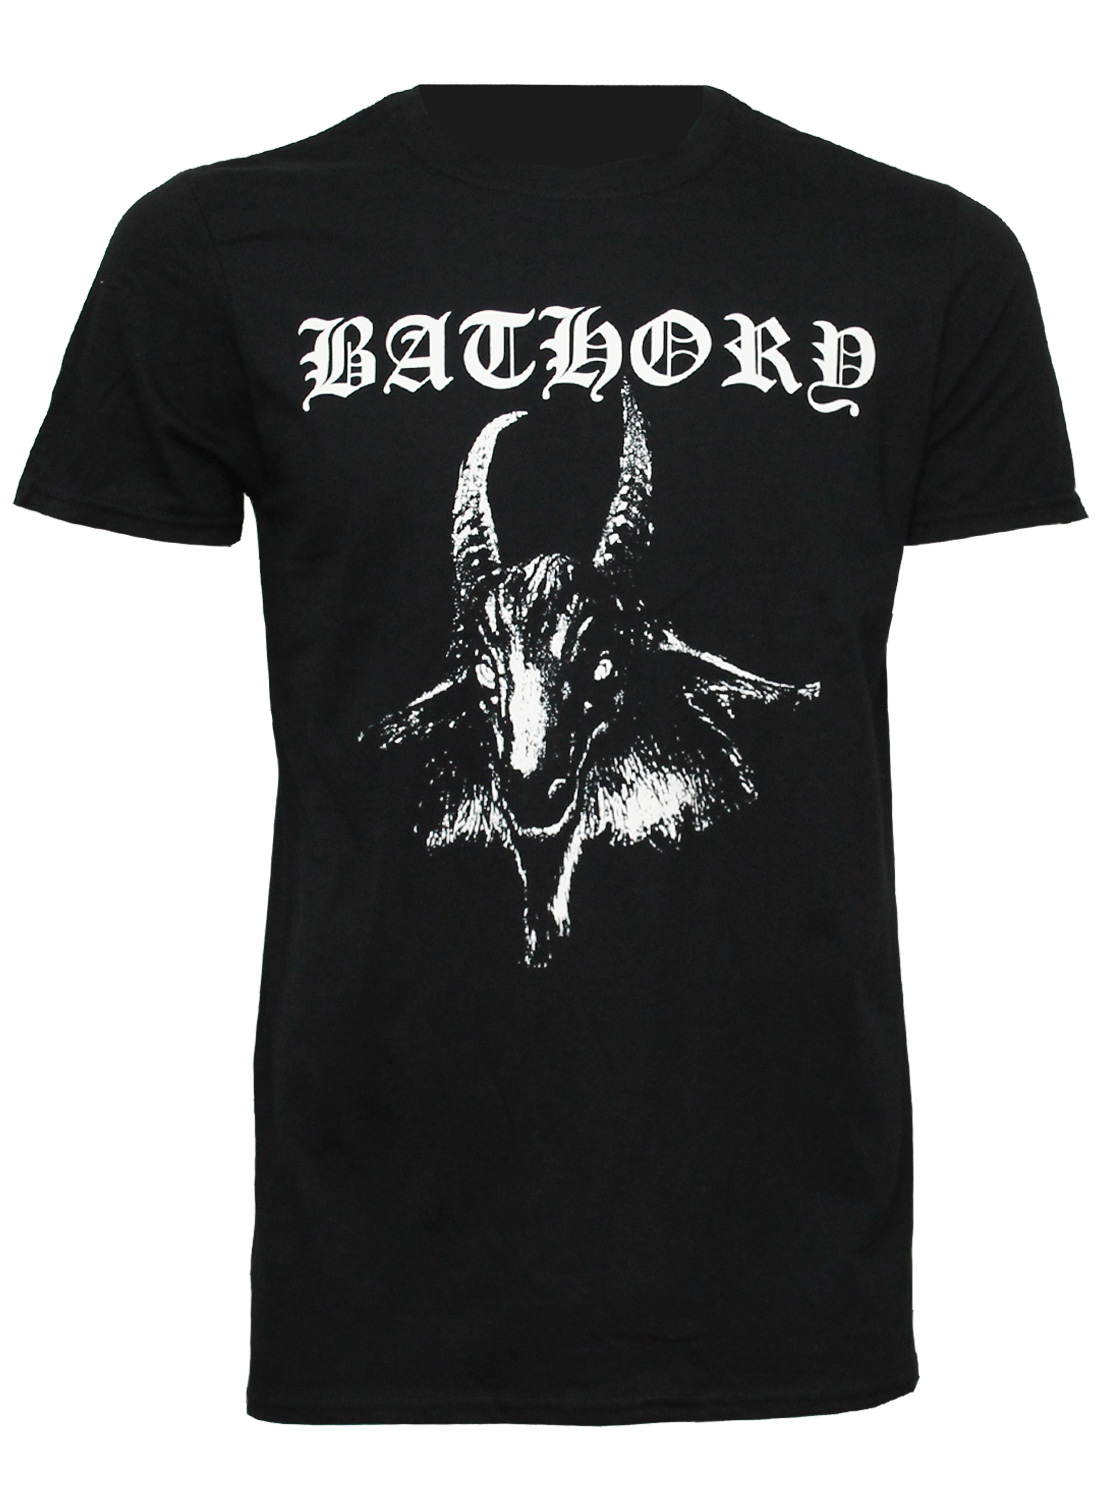 Bathory Goat T-shirt är en officiell merchandise t-shirt